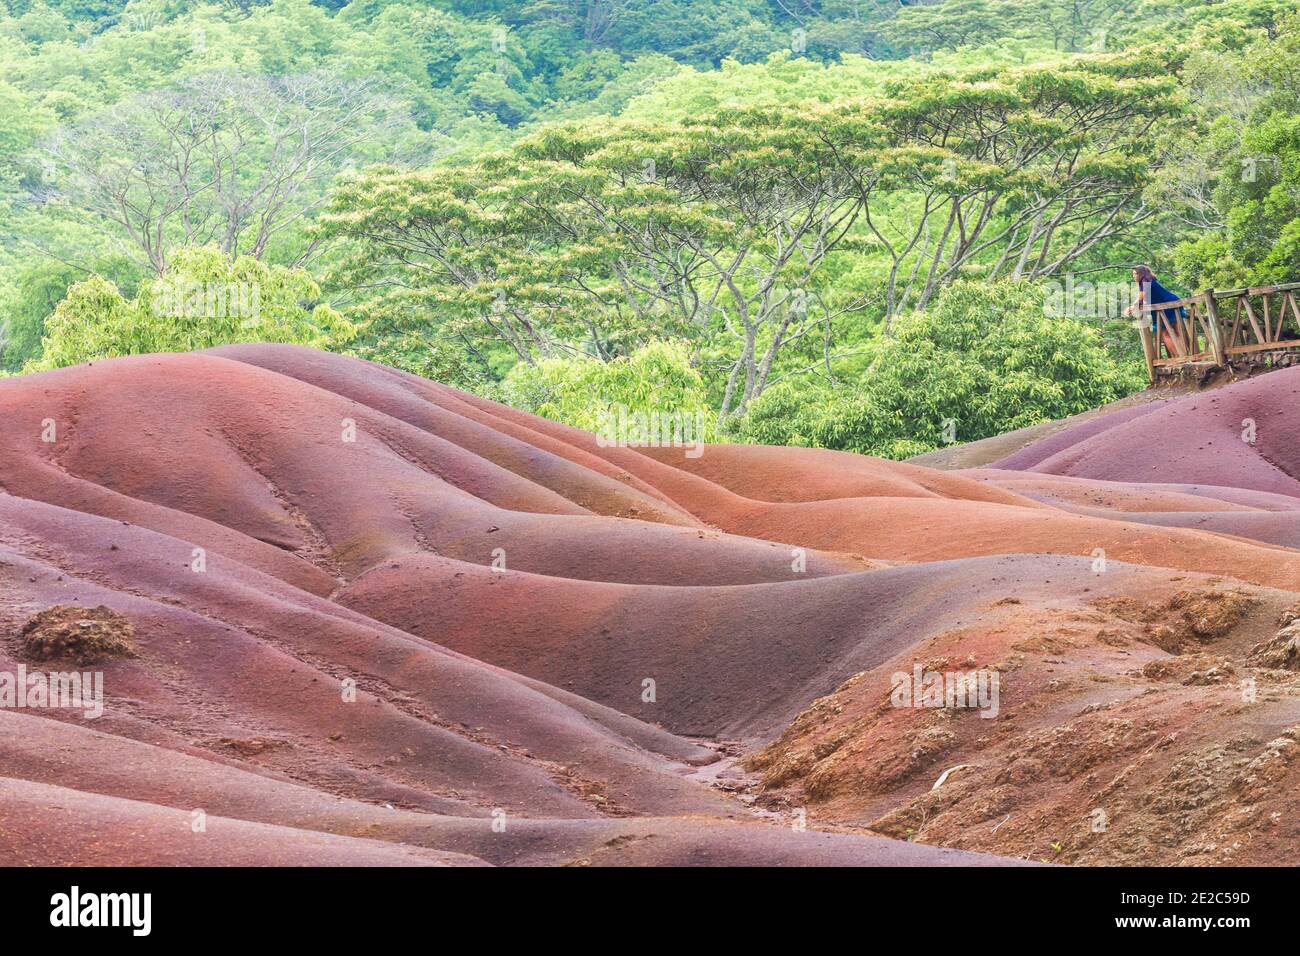 Mauritius, Afrika - Jan 2021: Mädchen schaut auf sieben farbige Erde im Chamarel Park, Mauritius Insel Stockfoto